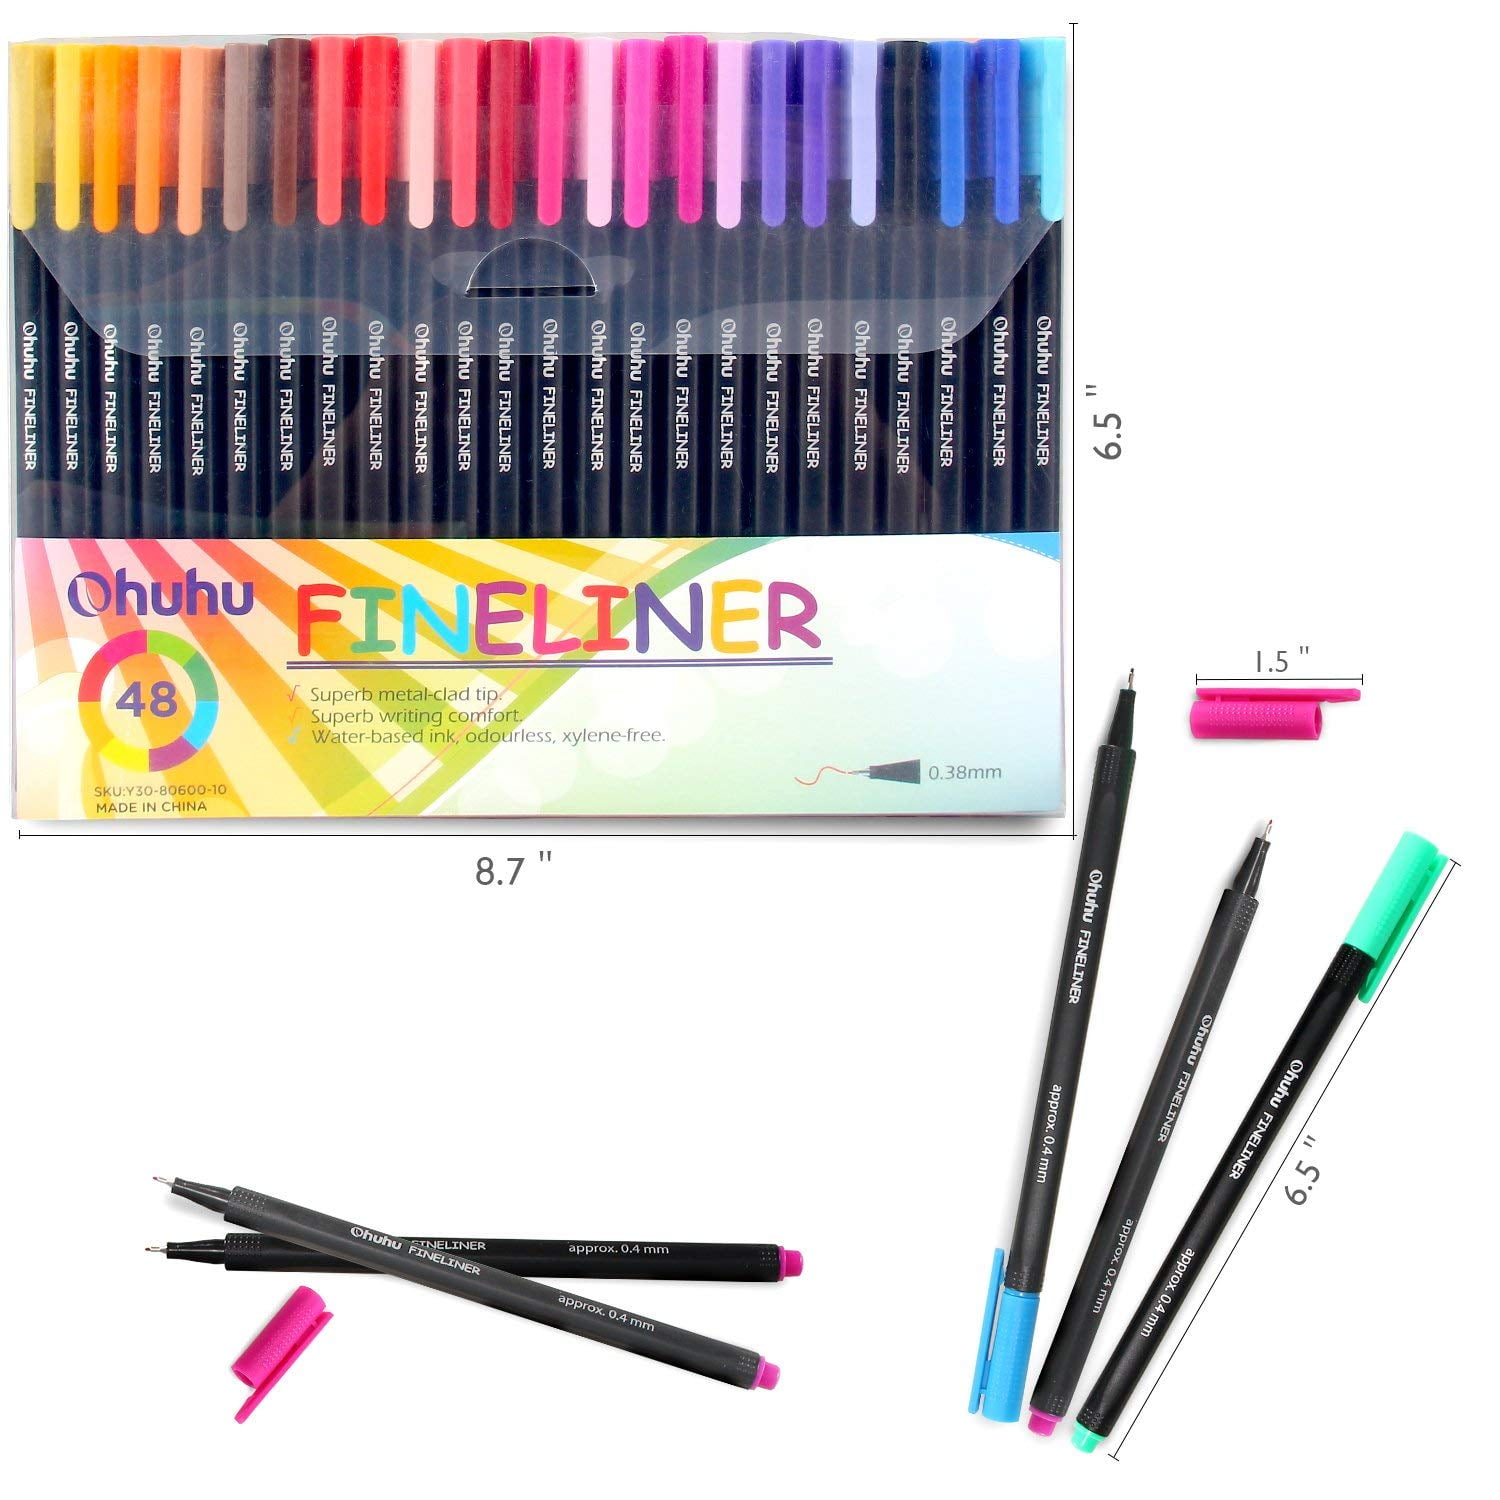 Ohuhu Kohala Liquid Fineliner Drawing Pens,9 Pack – ohuhu